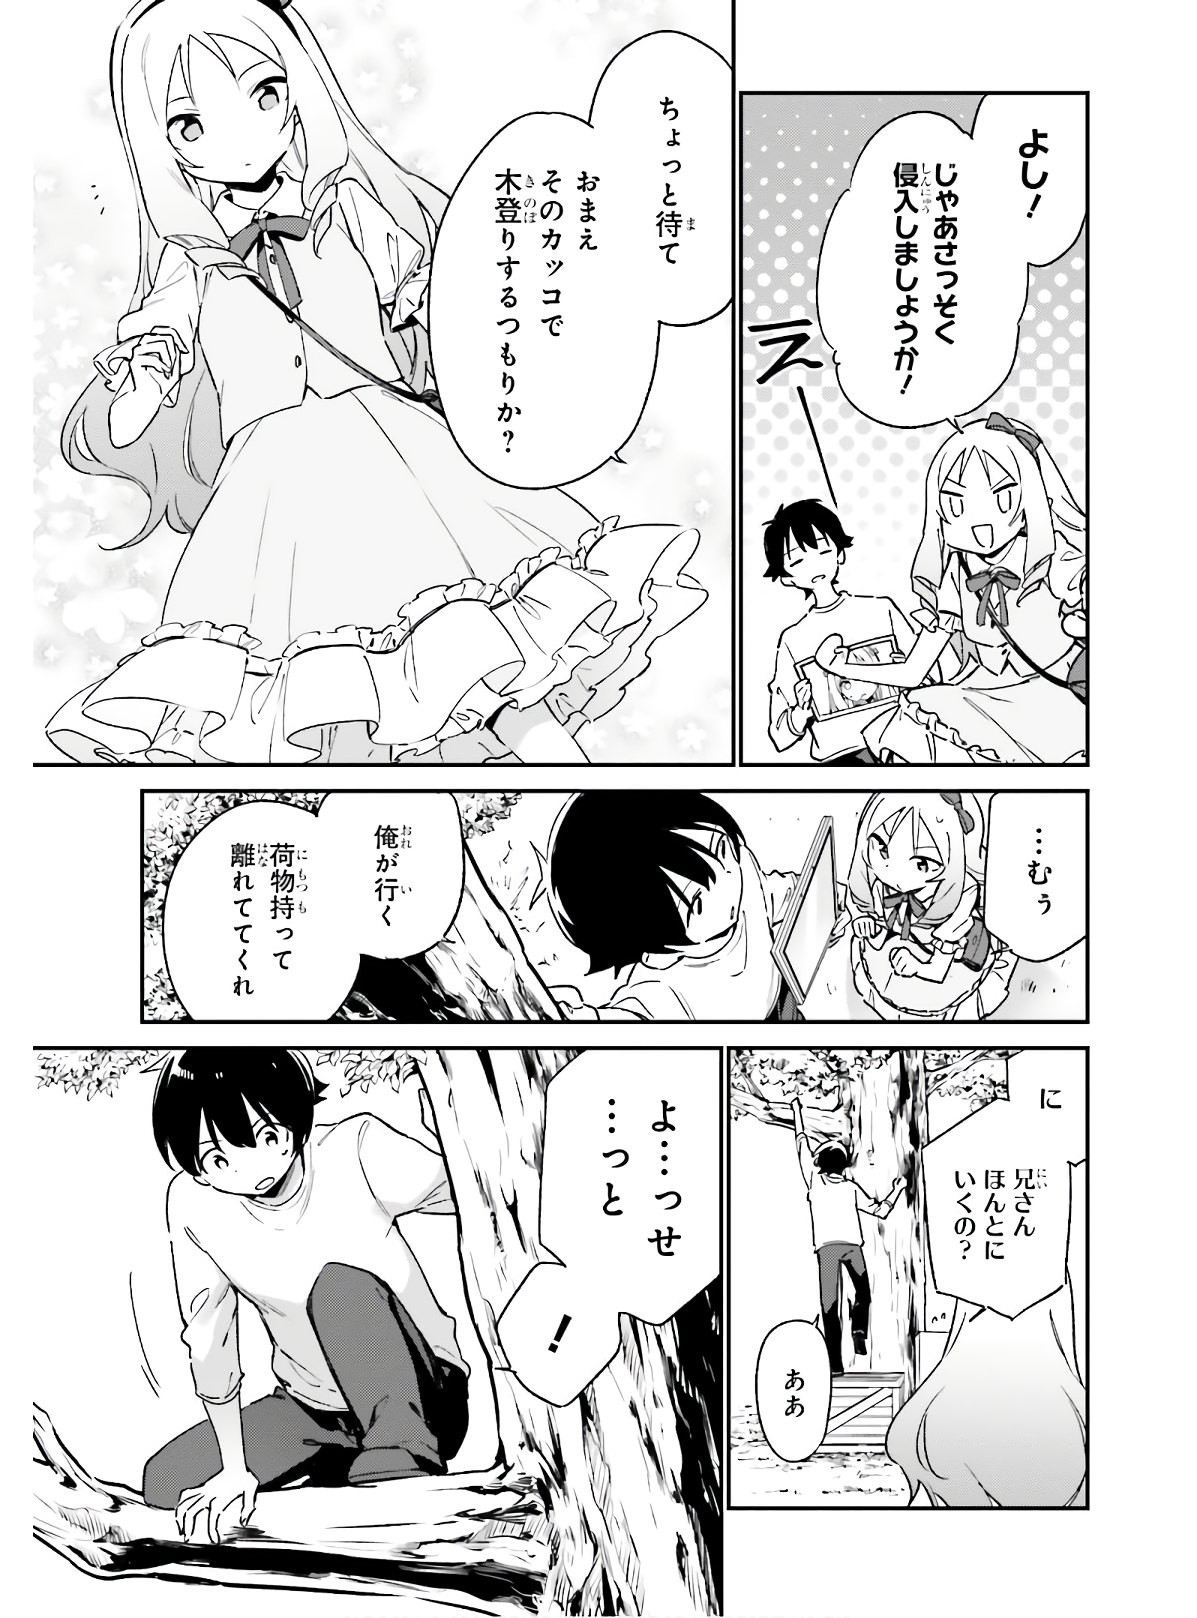 Ero Manga Sensei - Chapter 68 - Page 17